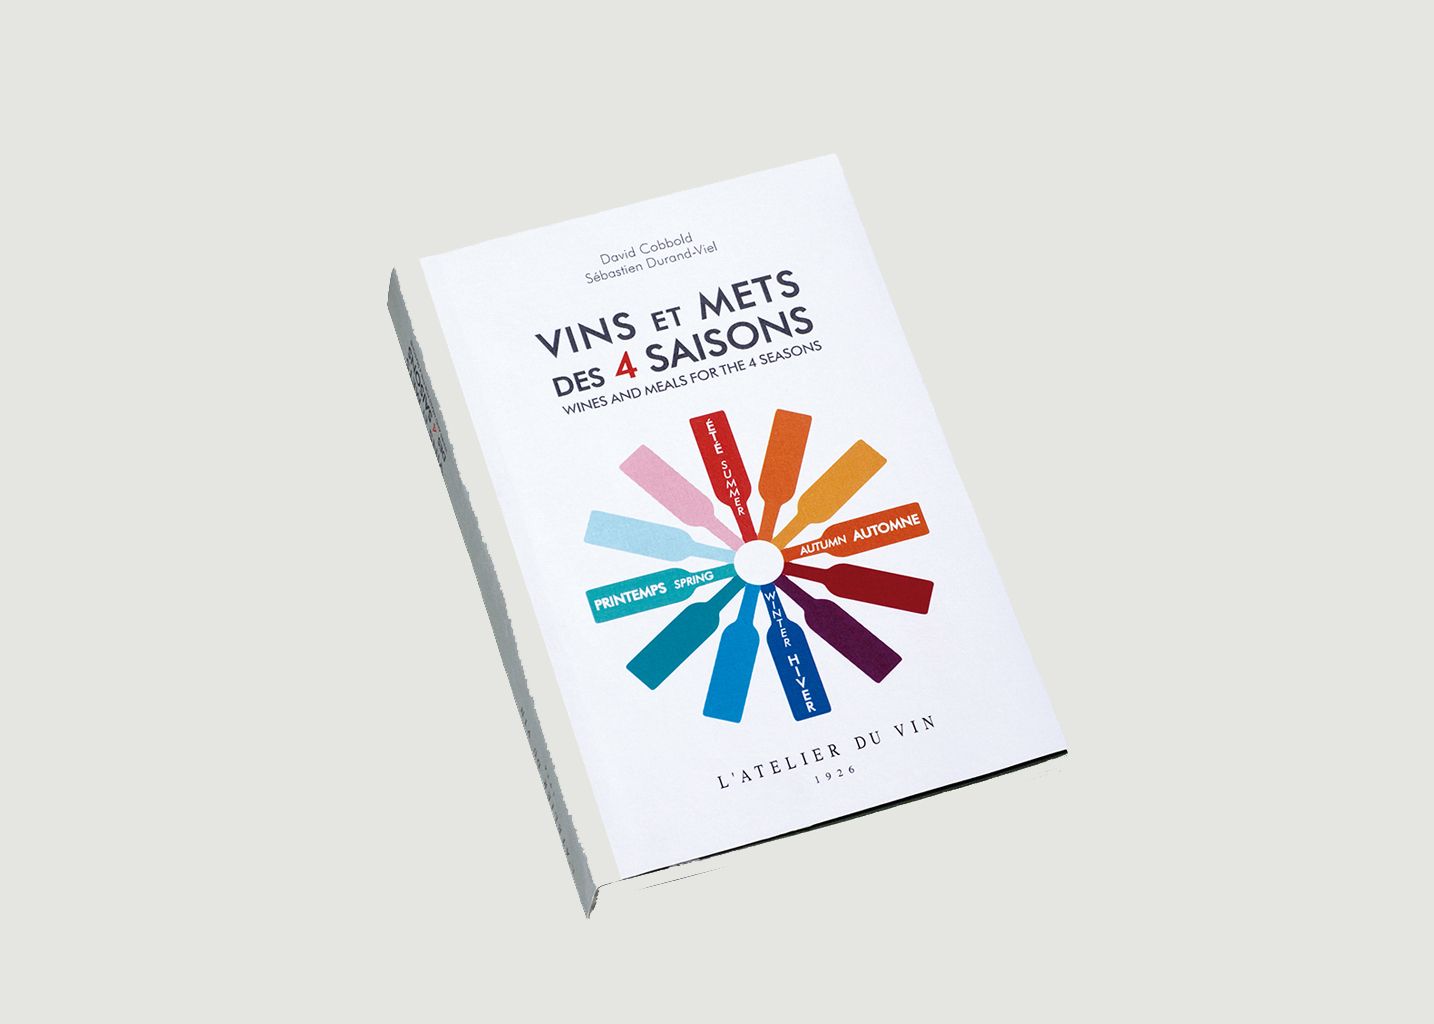 Vins et Mets des 4 Saisons - Atelier Du Vin